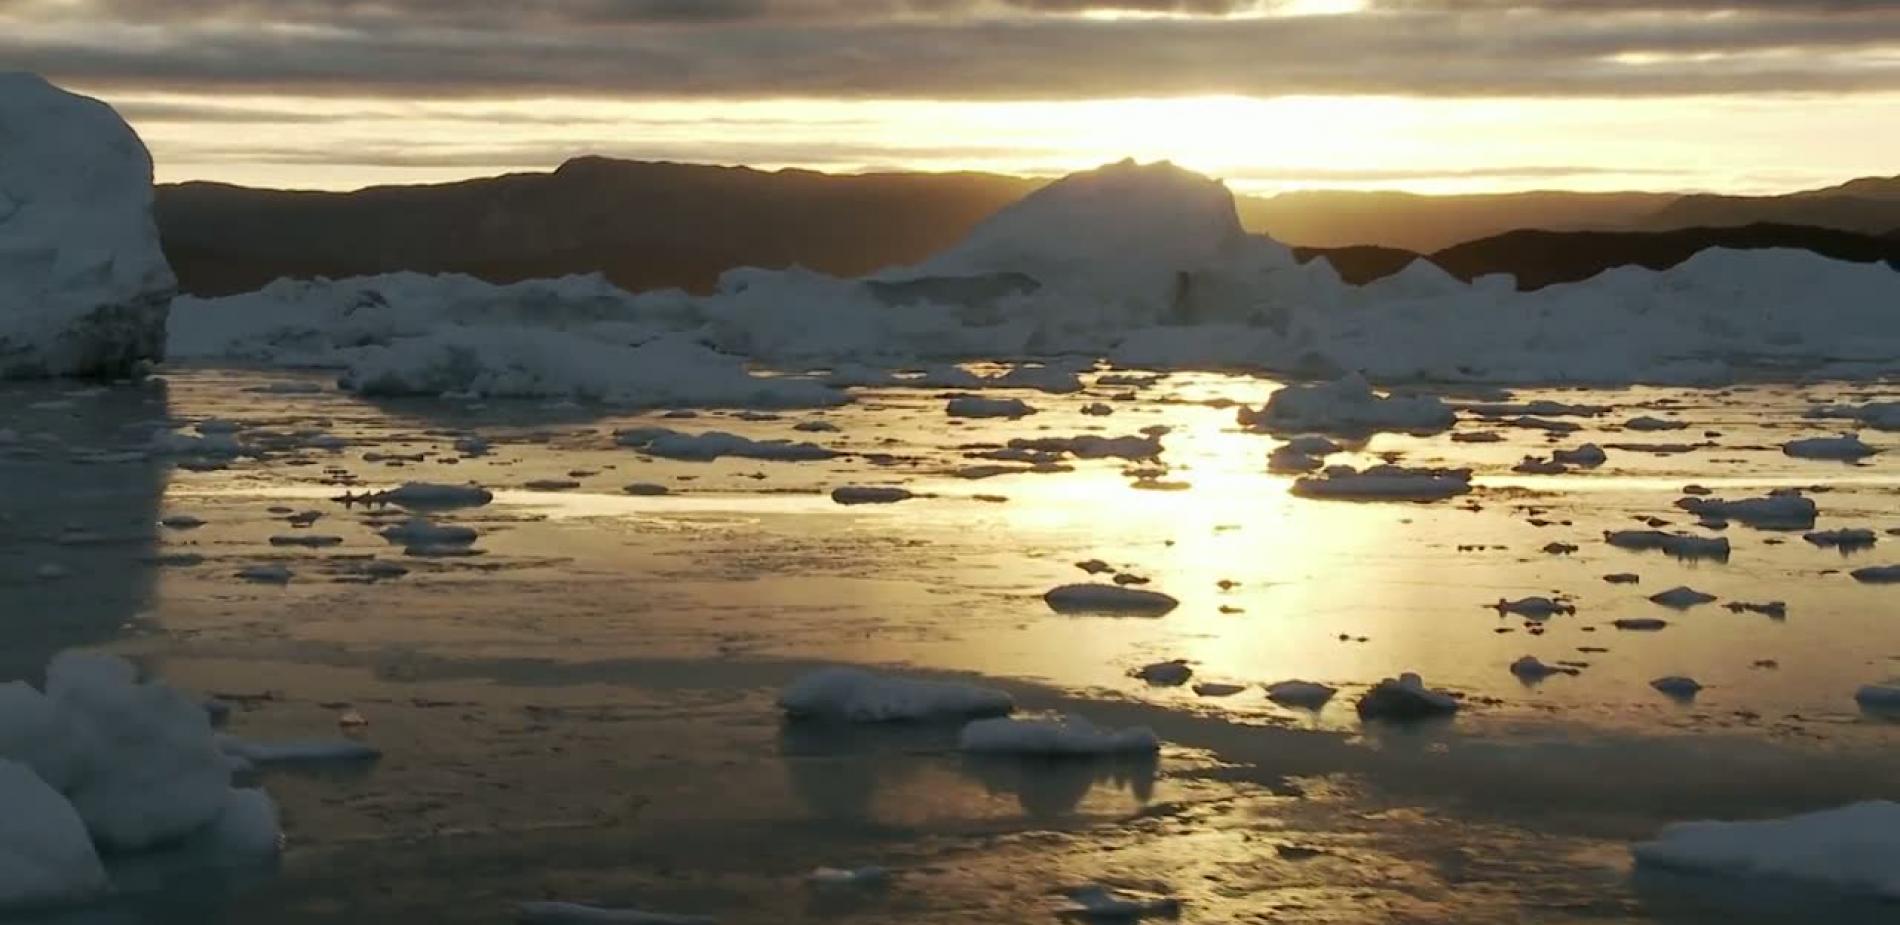 Groenland, le voyage sous la glace